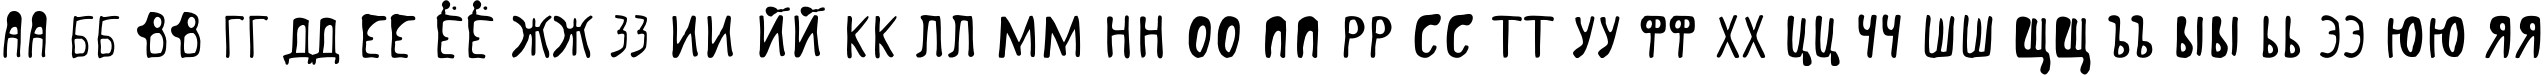 Пример написания русского алфавита шрифтом London